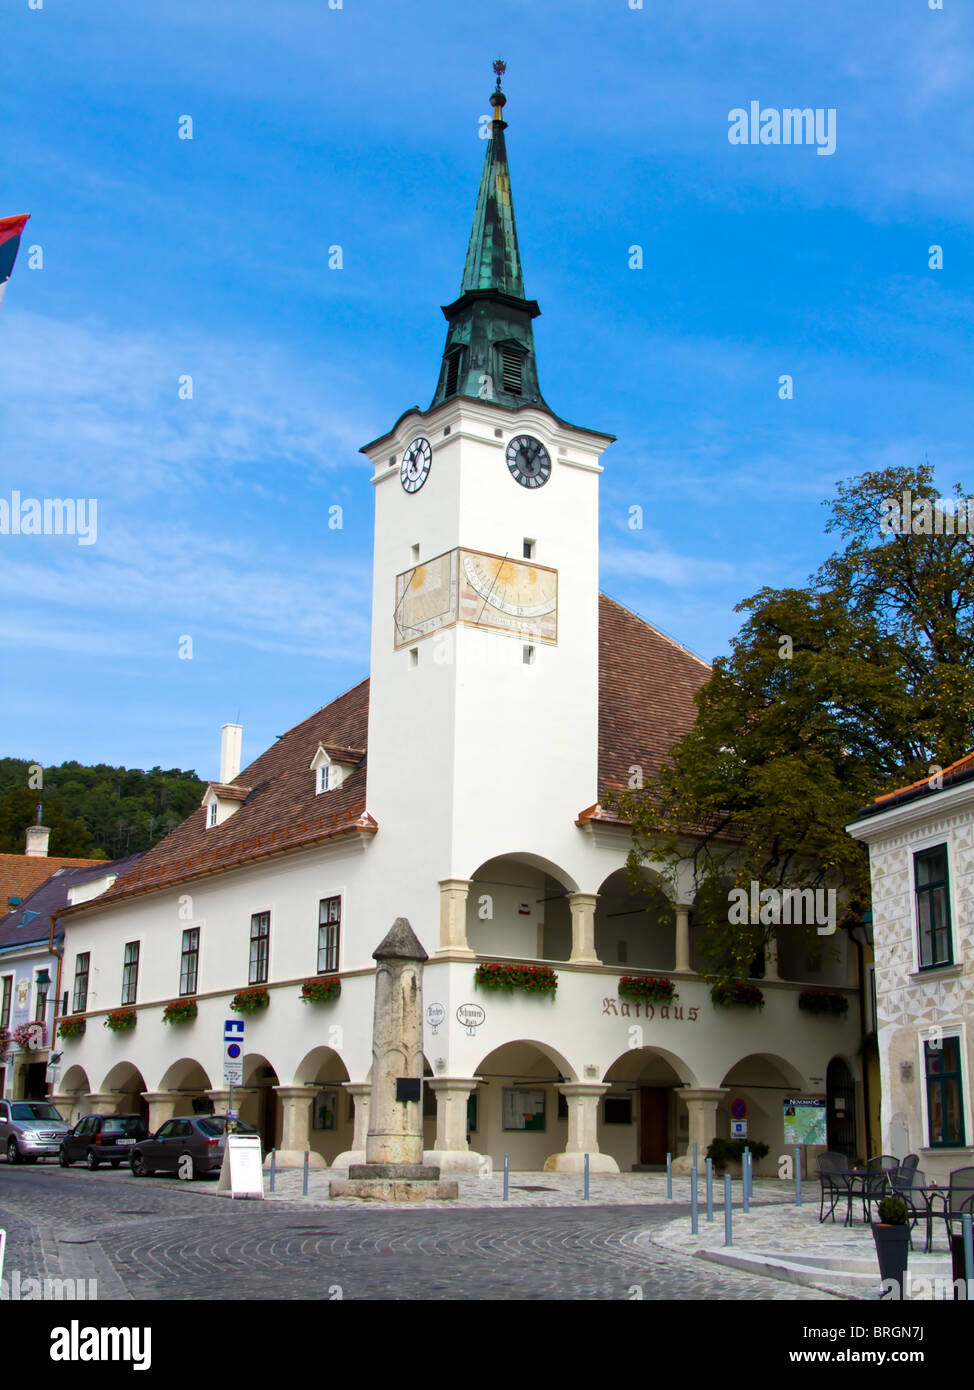 L'Autriche, Basse Autriche, Gumpoldskirchen, Cityscape with Church Banque D'Images